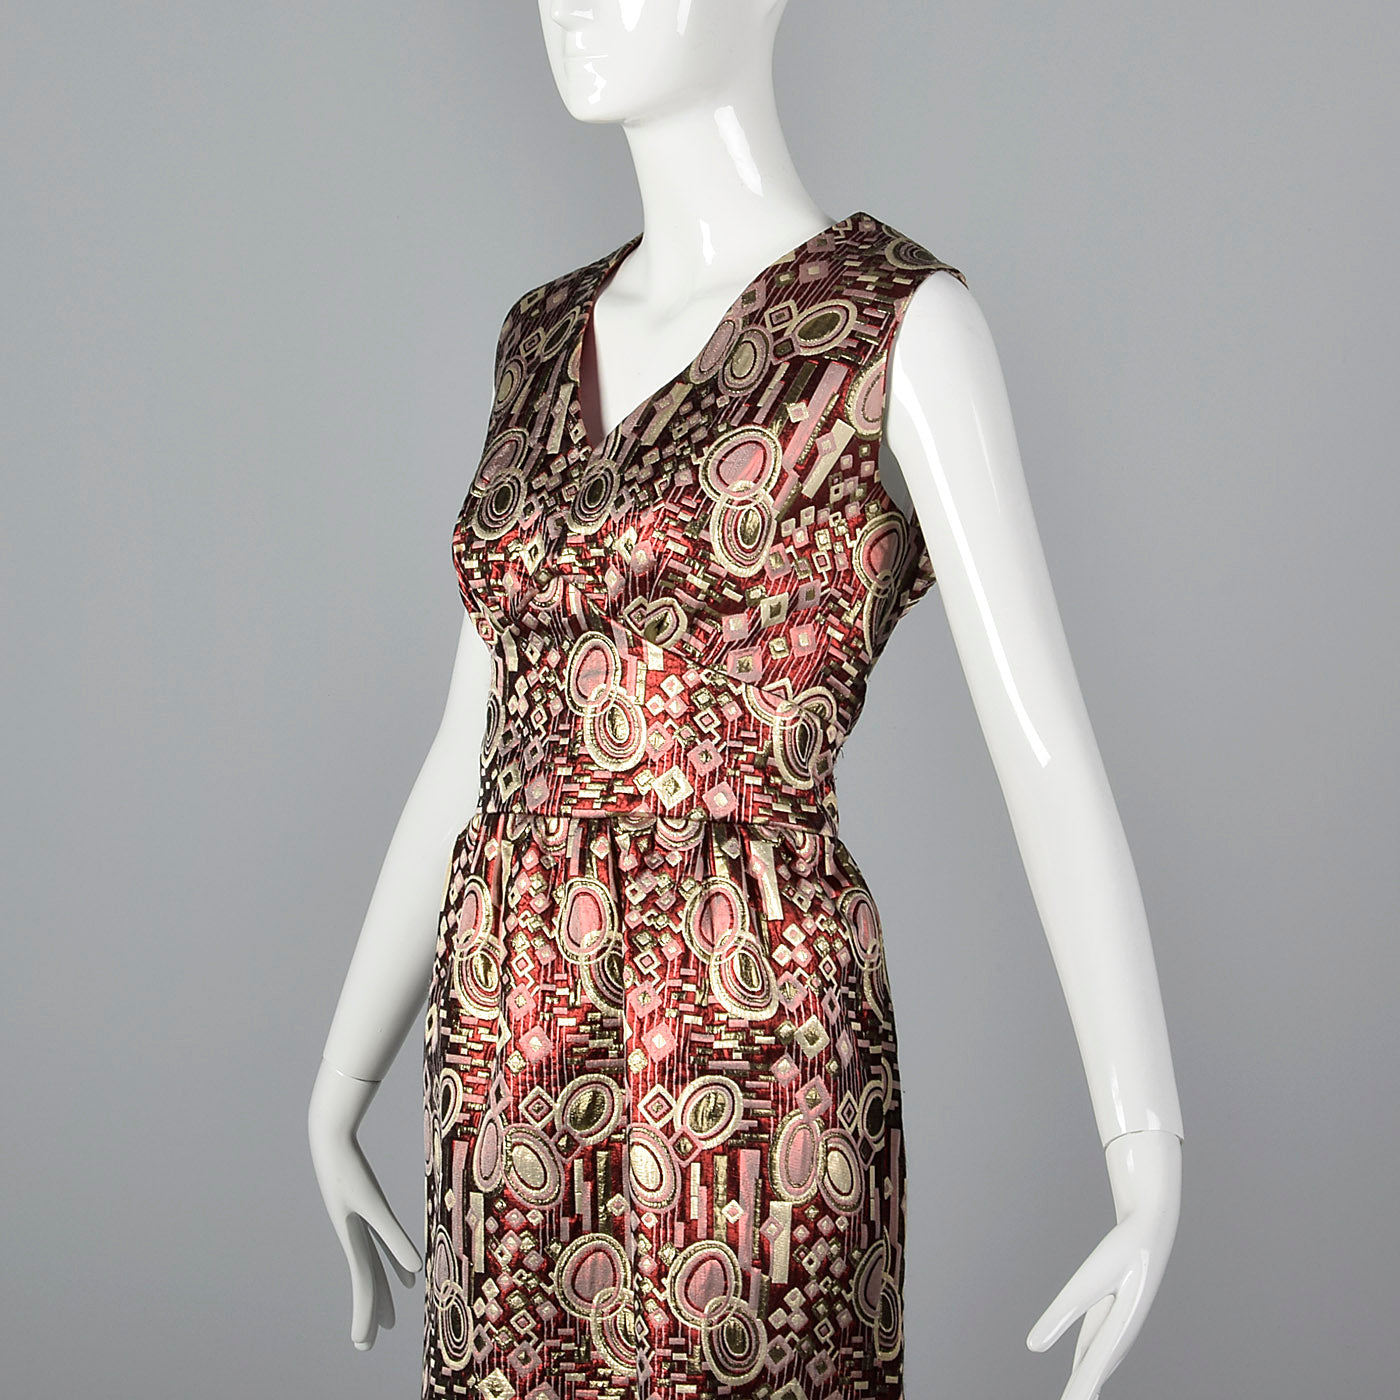 1960s Metallic Brocade Party Dress